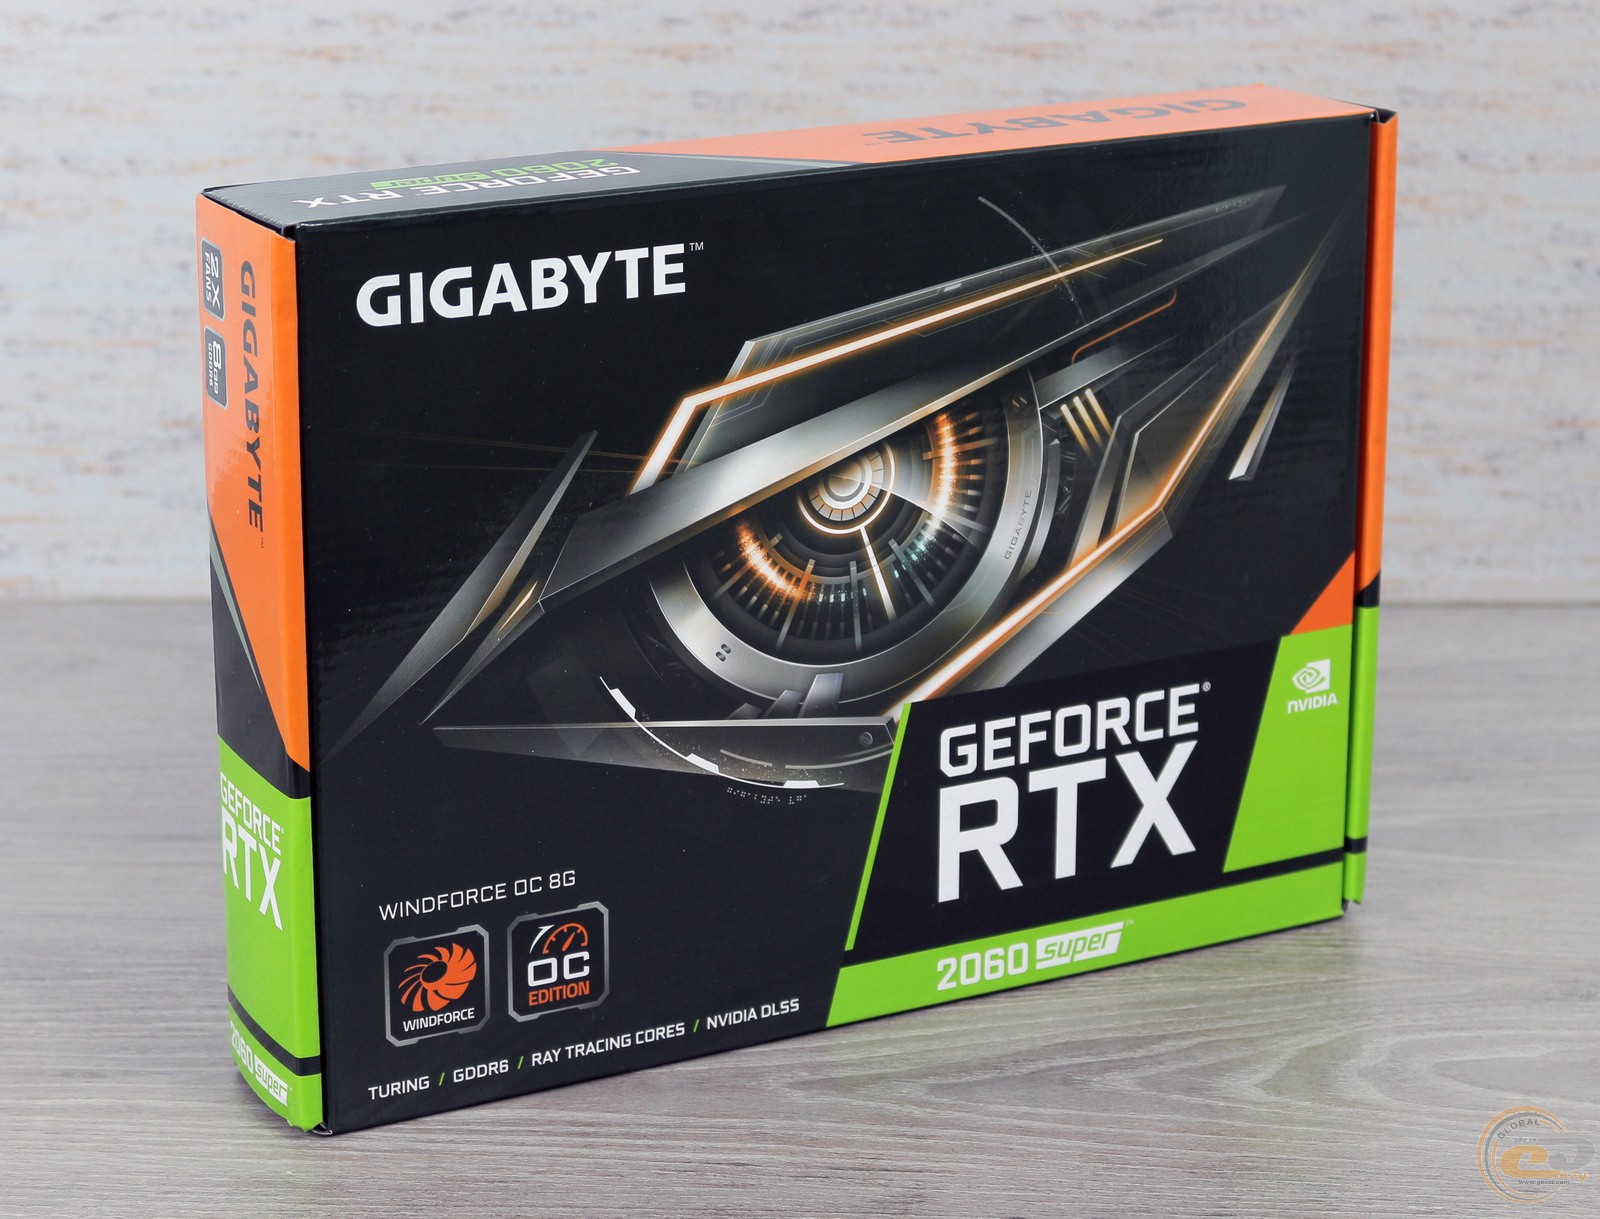 Gigabyte rtx 2060 super gaming. Видеокарта NVIDIA GEFORCE RTX 2060. Видеокарта GEFORCE GTX 2060 super. Видеокарта Gigabyte GEFORCE RTX 2060 6 GB. RTX 2060 super Gigabyte.